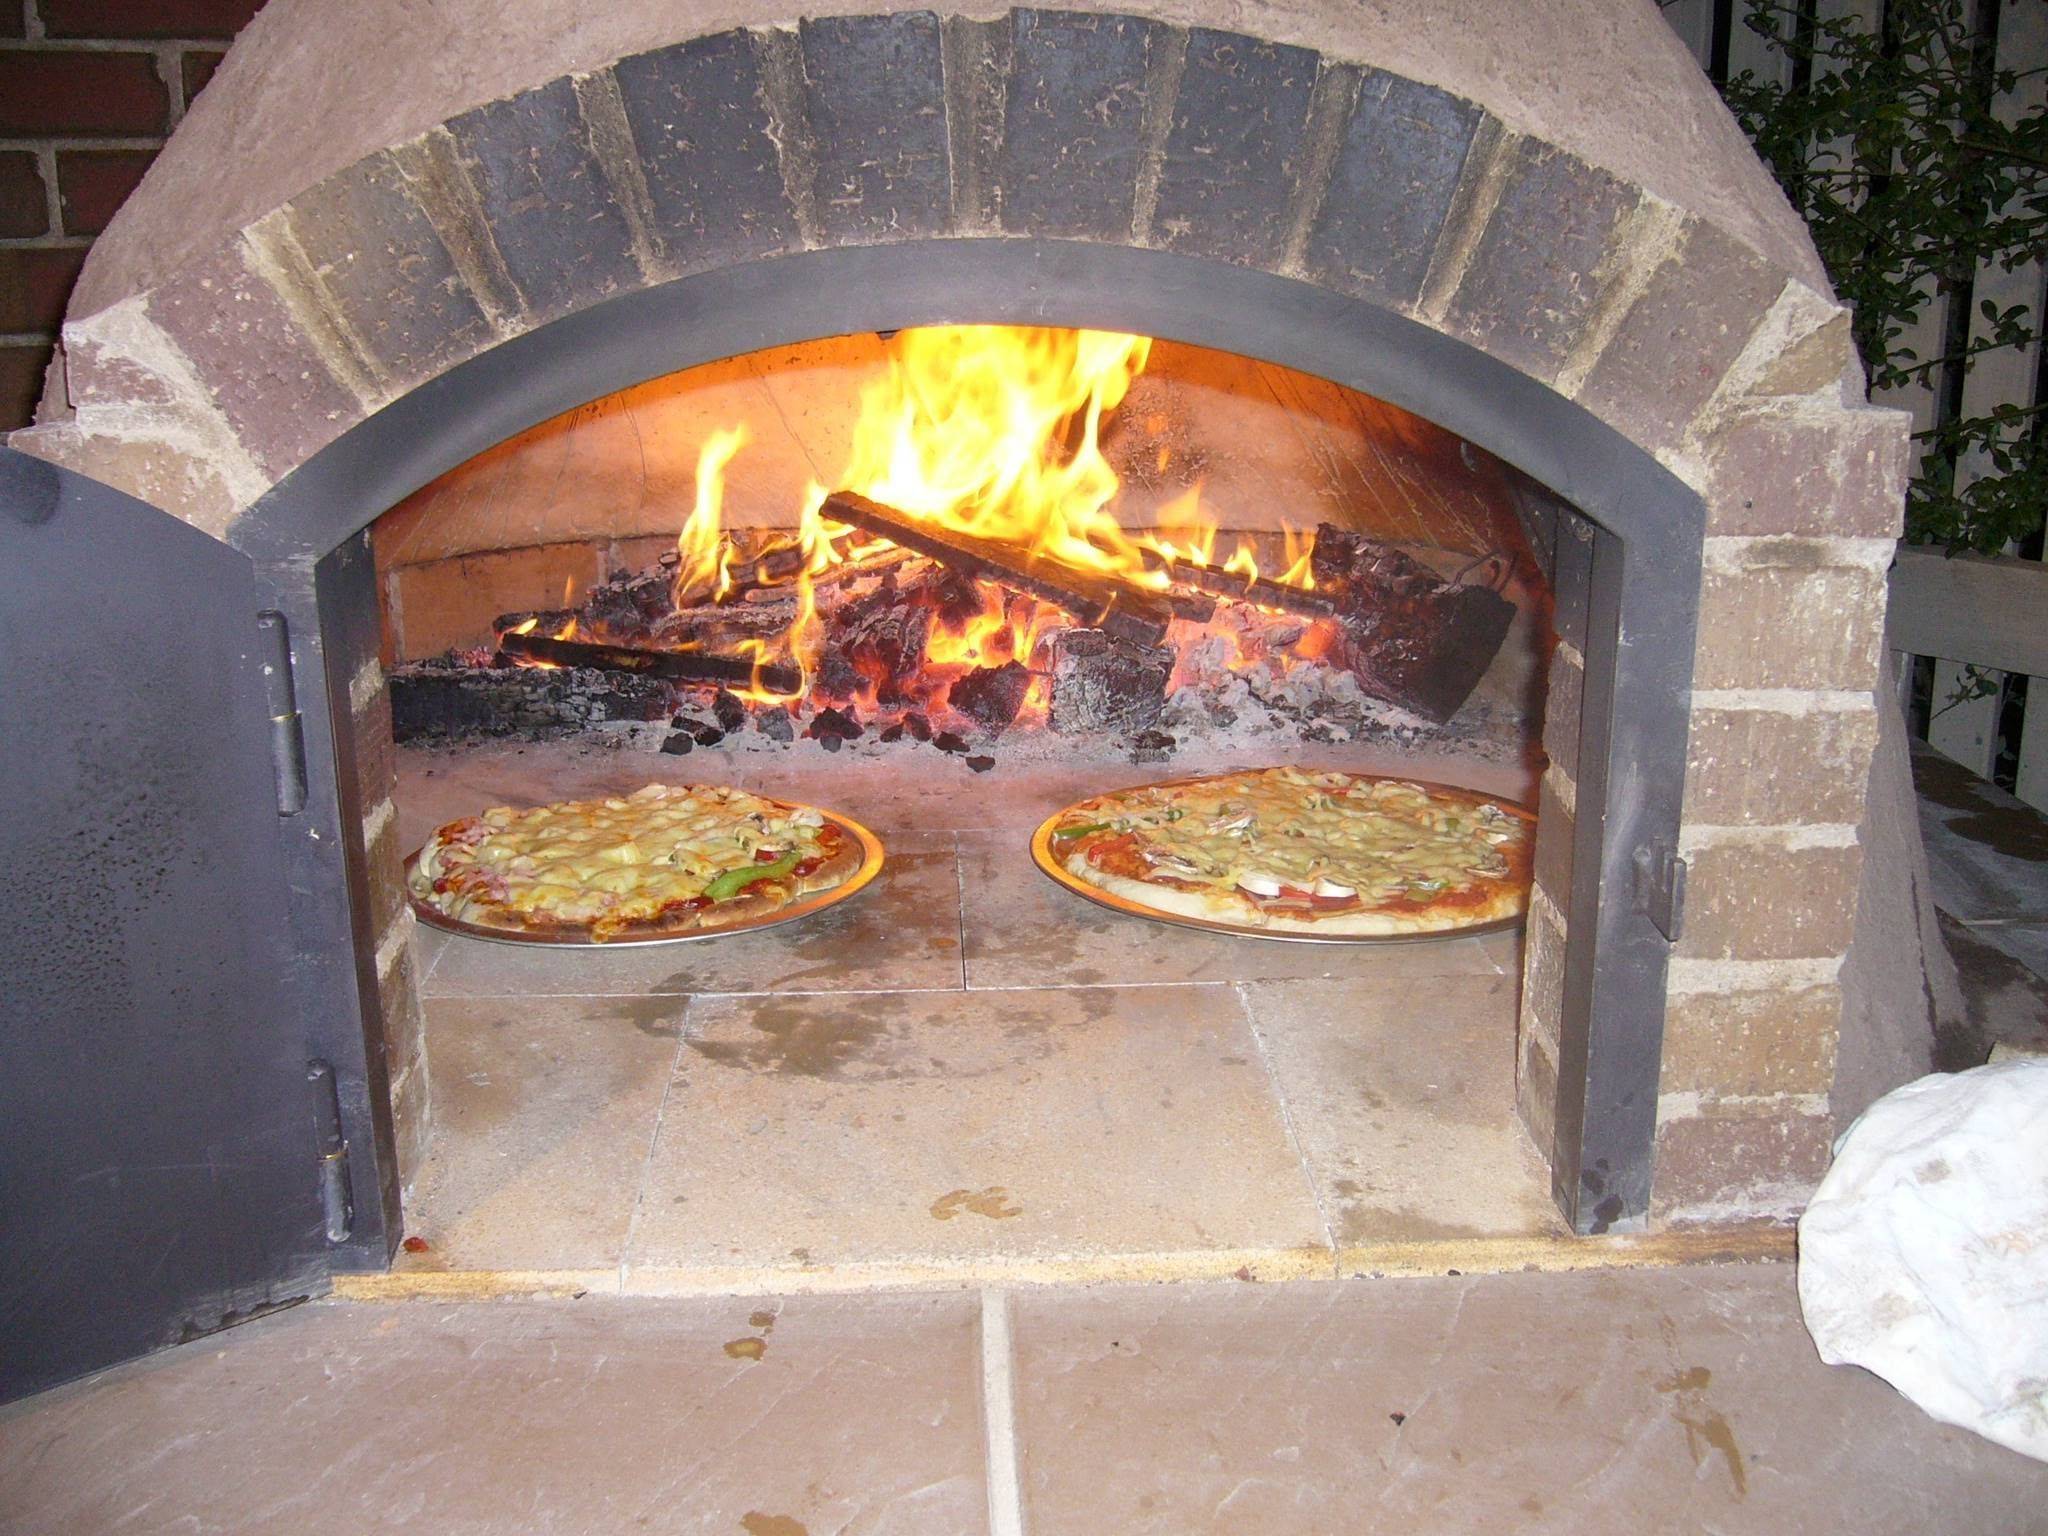 Печь помпейская для пиццы своими руками: чертежи, особенности конструкции, кладка